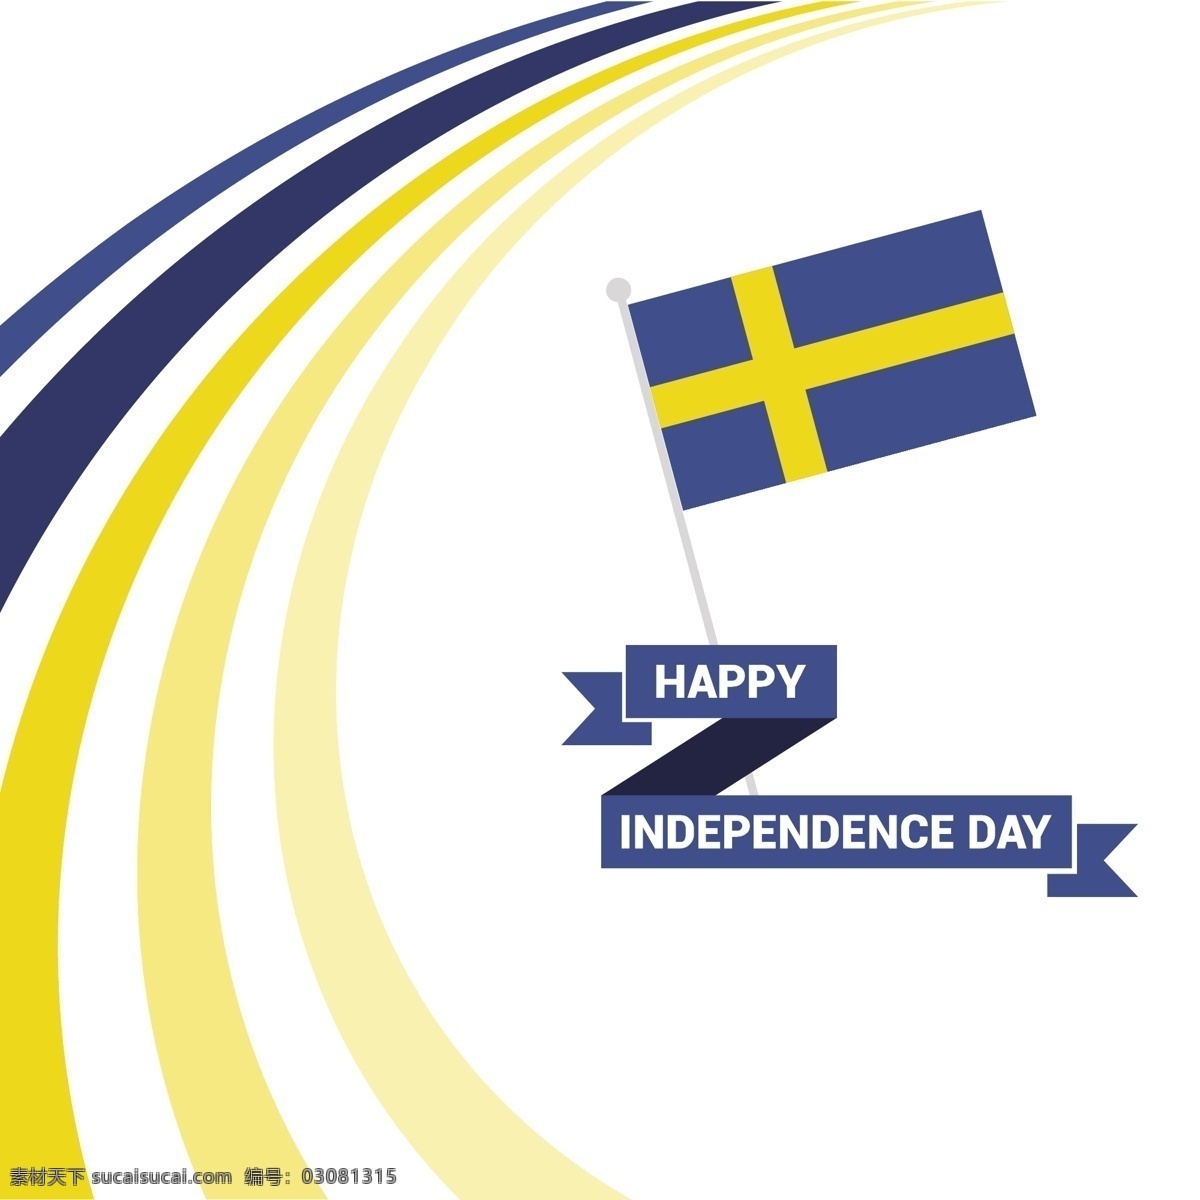 瑞典的独立日 背景 复古 丝带 派对 装饰 旗帜 快乐 壁纸 庆祝 节日 条纹 符号 国家 自由 标志 传统 选举 竞选 爱国 白色